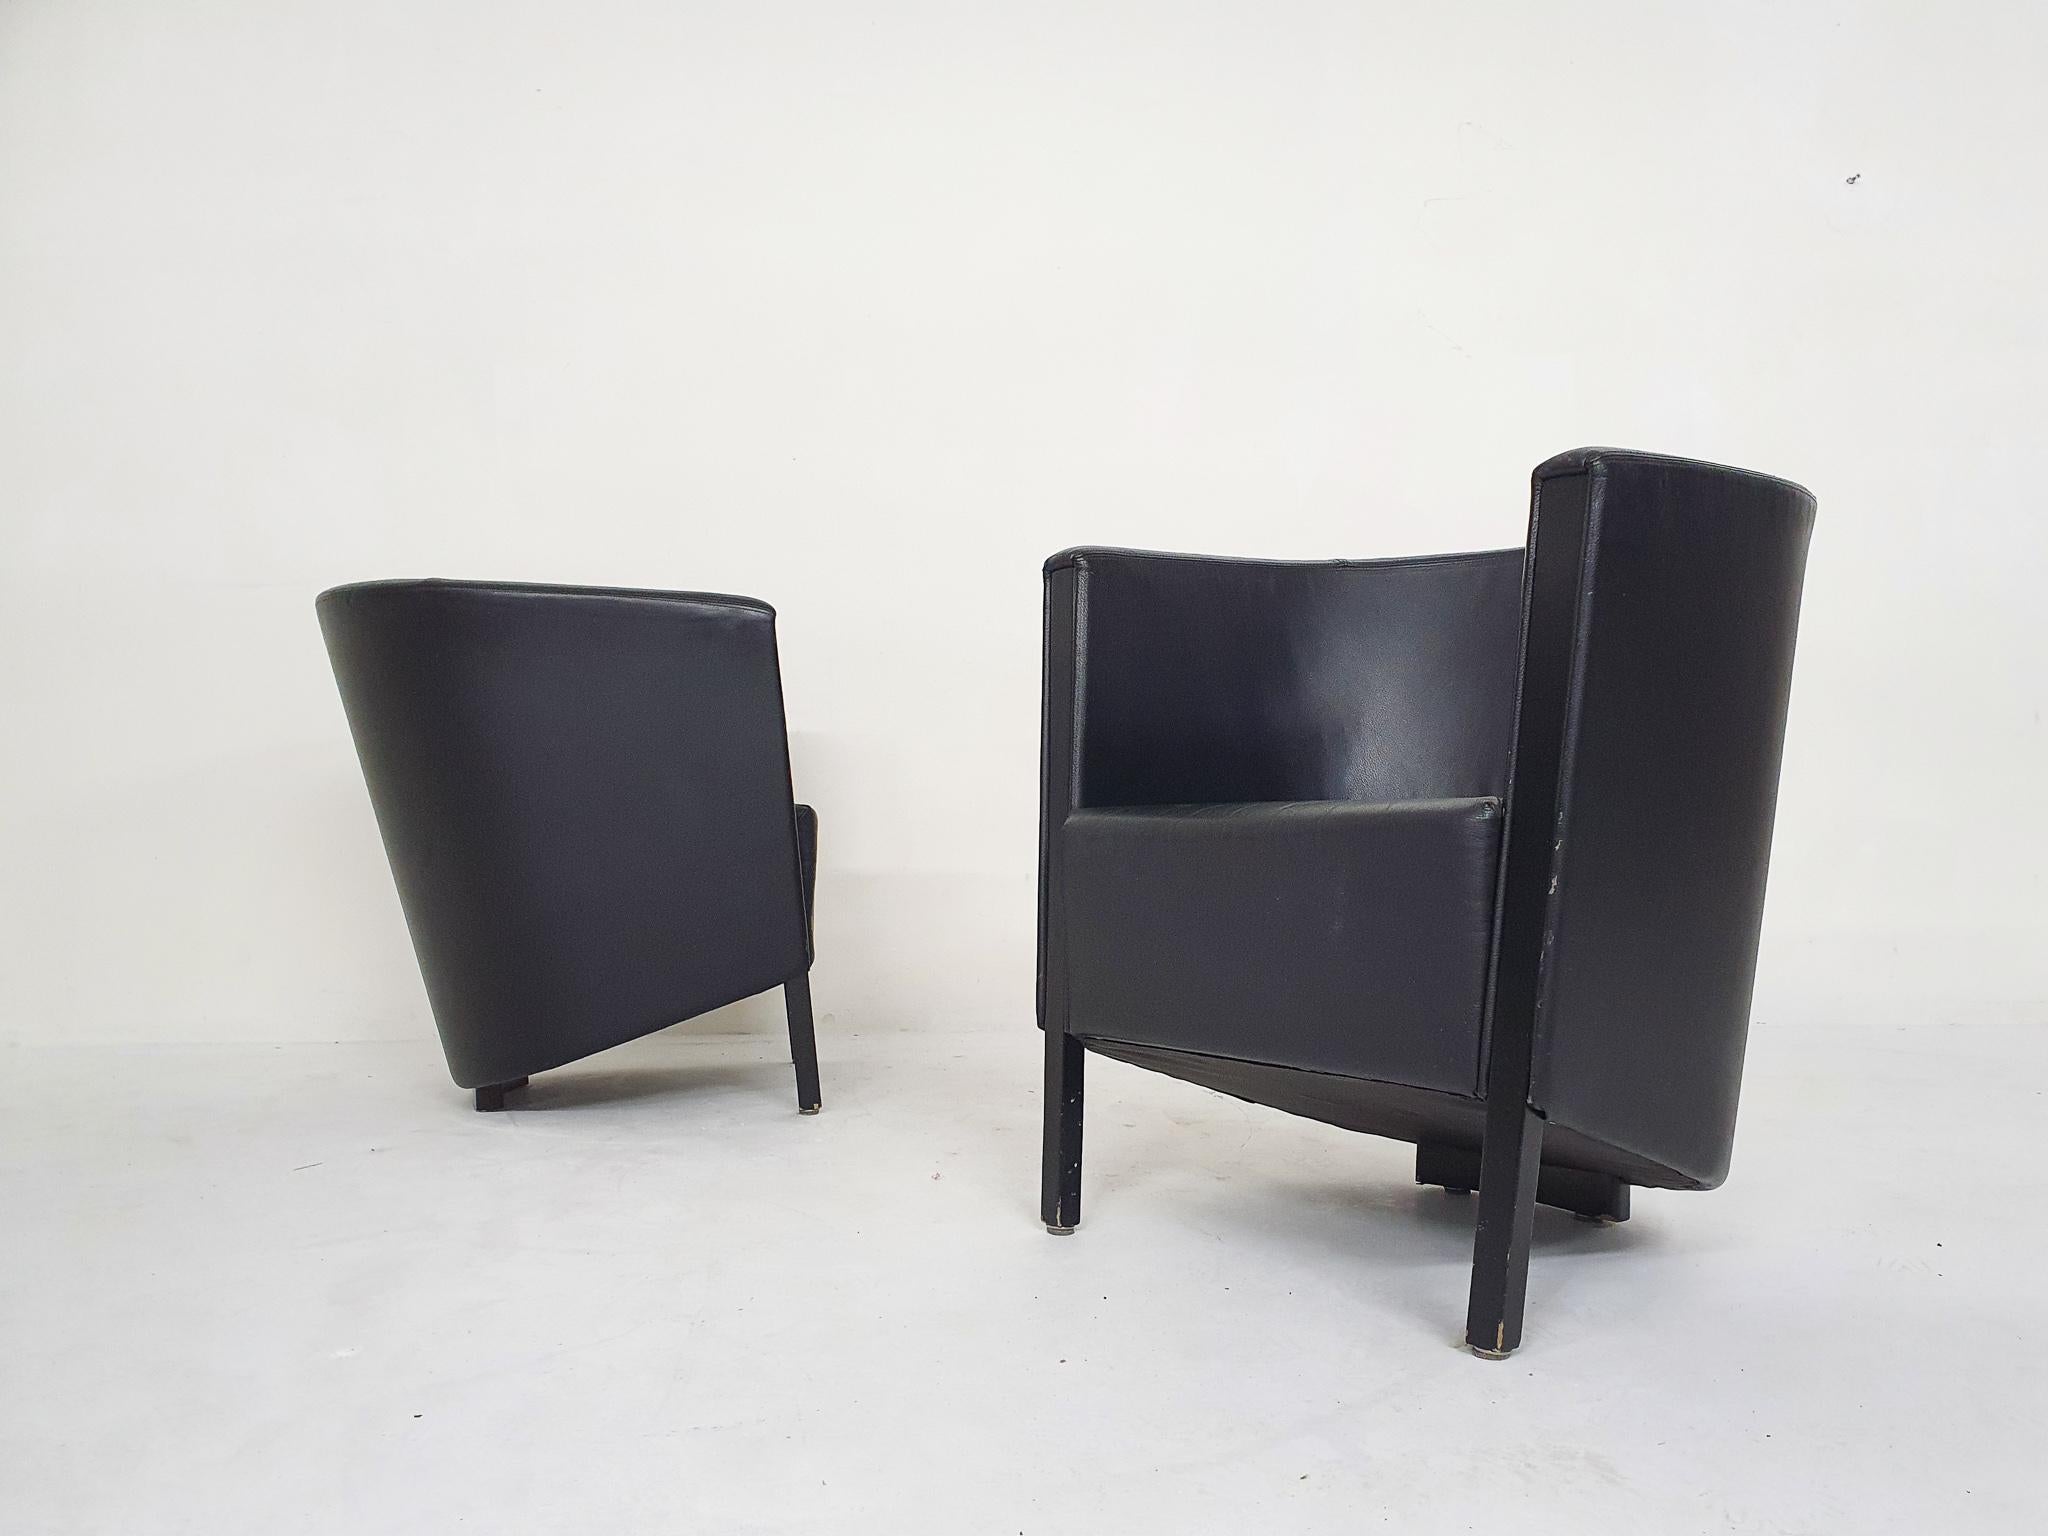 Ensemble de deux chaises de salon en cuir noir avec pieds en bois noir par Antonio Citterio pour Moroso Avec des traces normales d'utilisation correspondant à l'âge et à l'usage.

